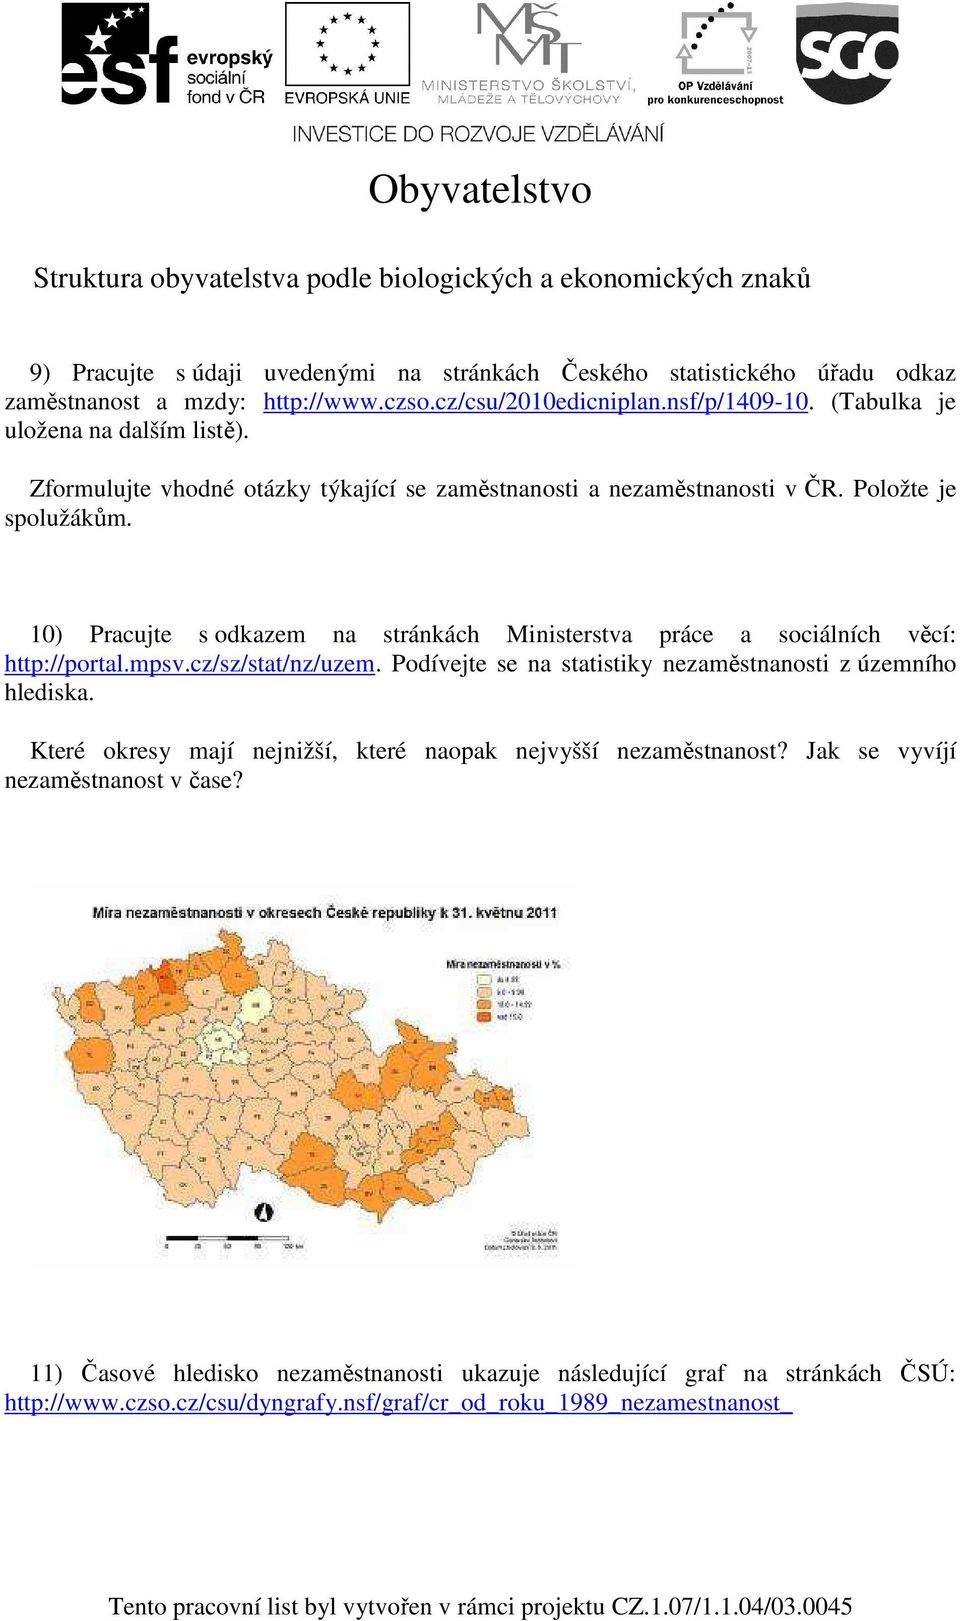 10) Pracujte s odkazem na stránkách Ministerstva práce a sociálních věcí: http://portal.mpsv.cz/sz/stat/nz/uzem. Podívejte se na statistiky nezaměstnanosti z územního hlediska.